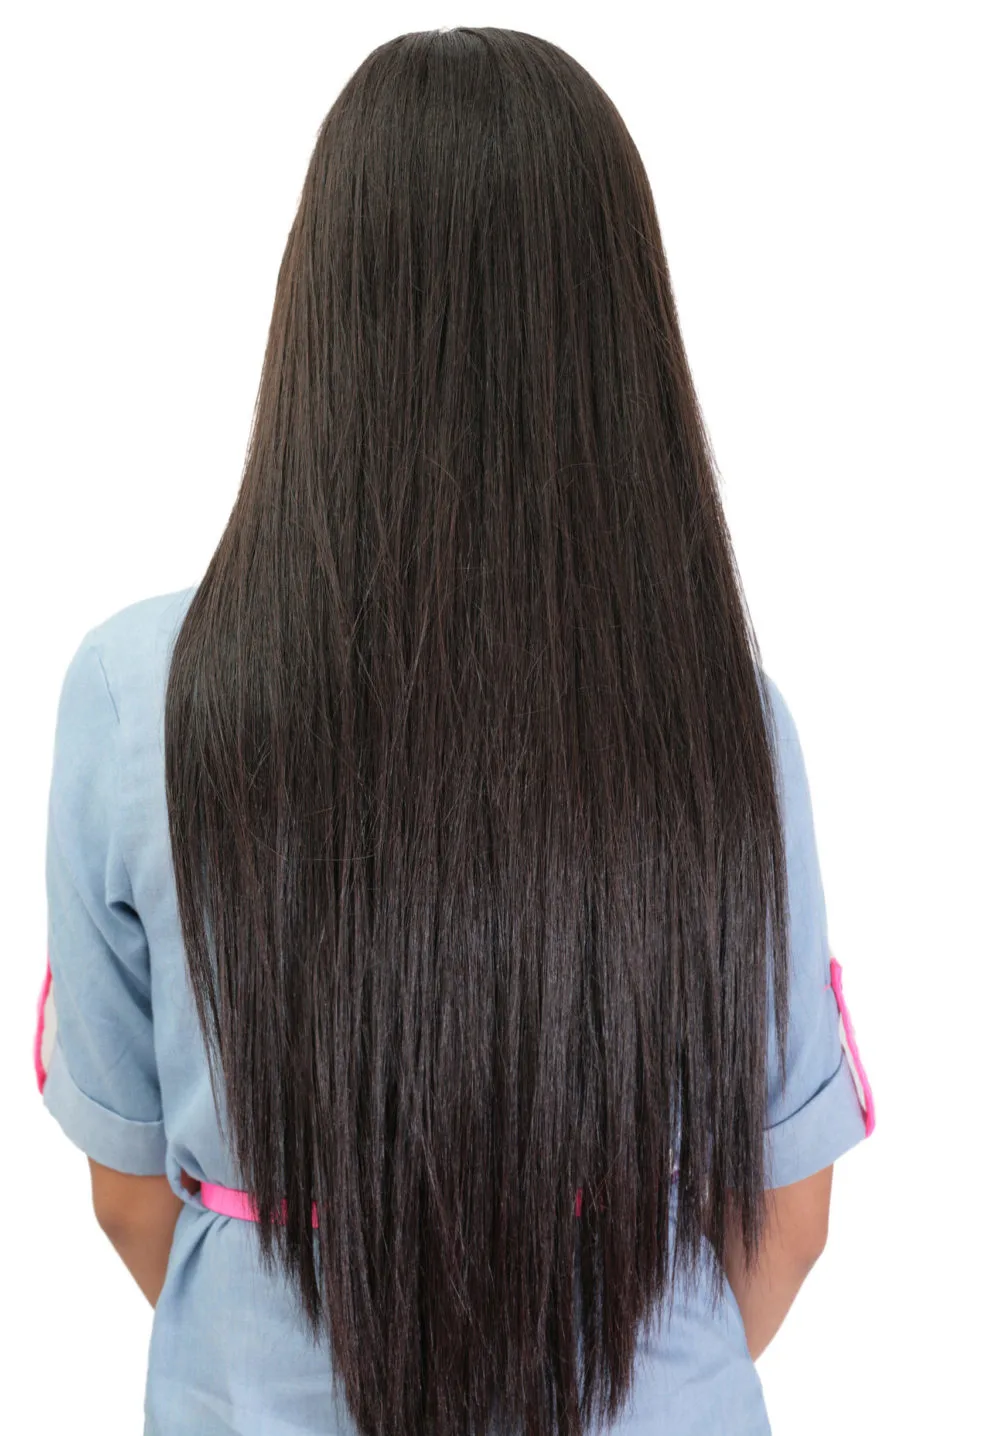 Tailbone Length V-Cut Straight Strands on a hair length chart